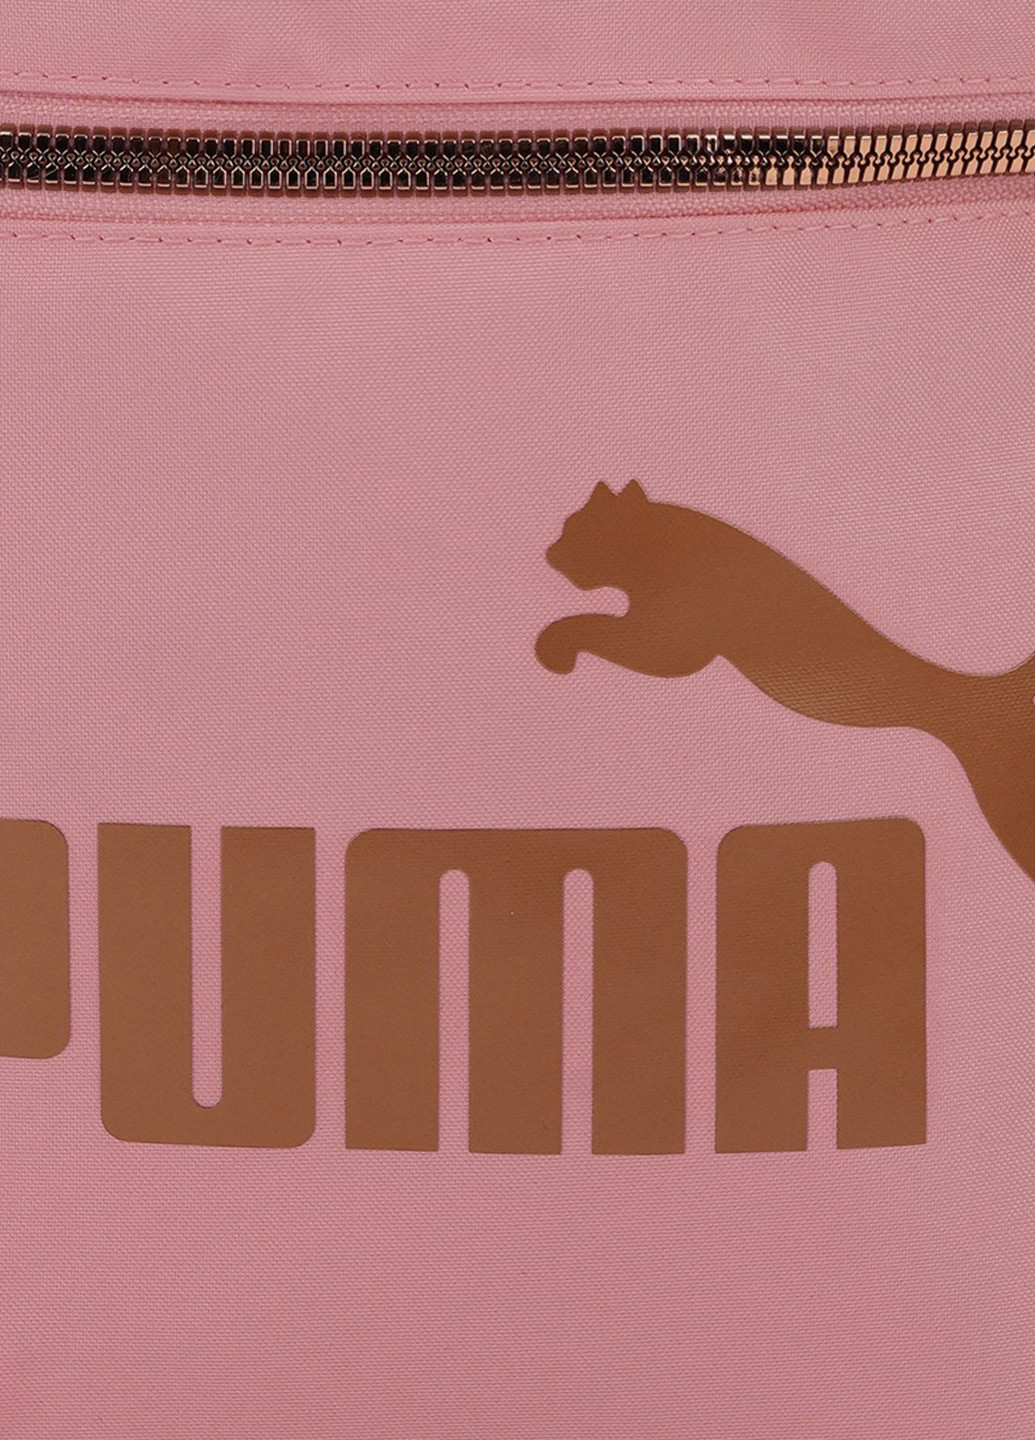 Рюкзак Puma core base college bag (222993155)